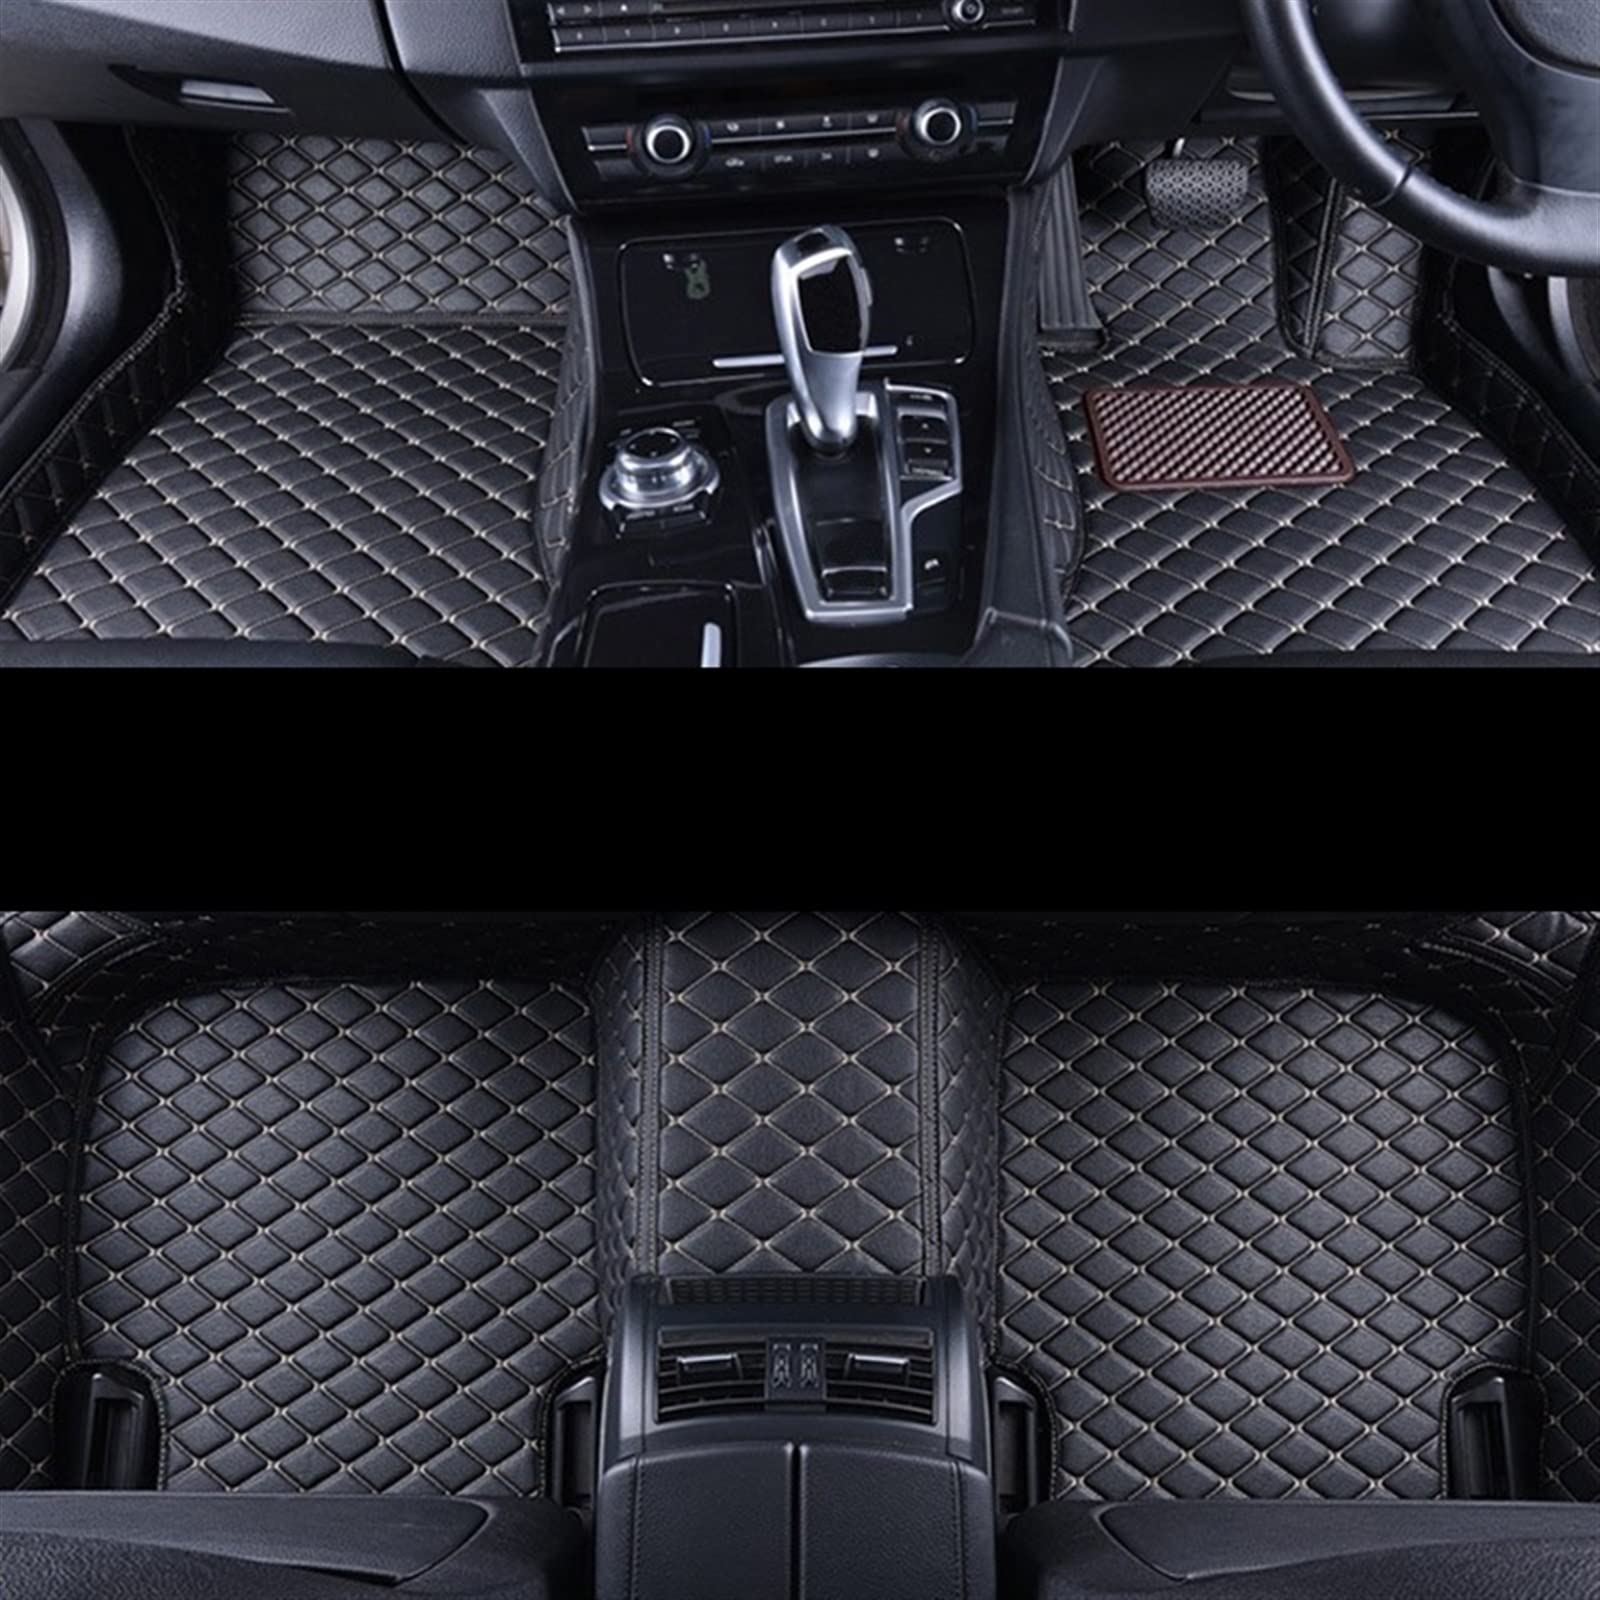 Fußmatten RHD Custom Car Fußmatten Teppiche Für Toyota Für Hilux Für Revo 2018 2017 2016 2015 Auto Lederteppiche(RHD 3pcs blk beige) von DZSMACHENGSM